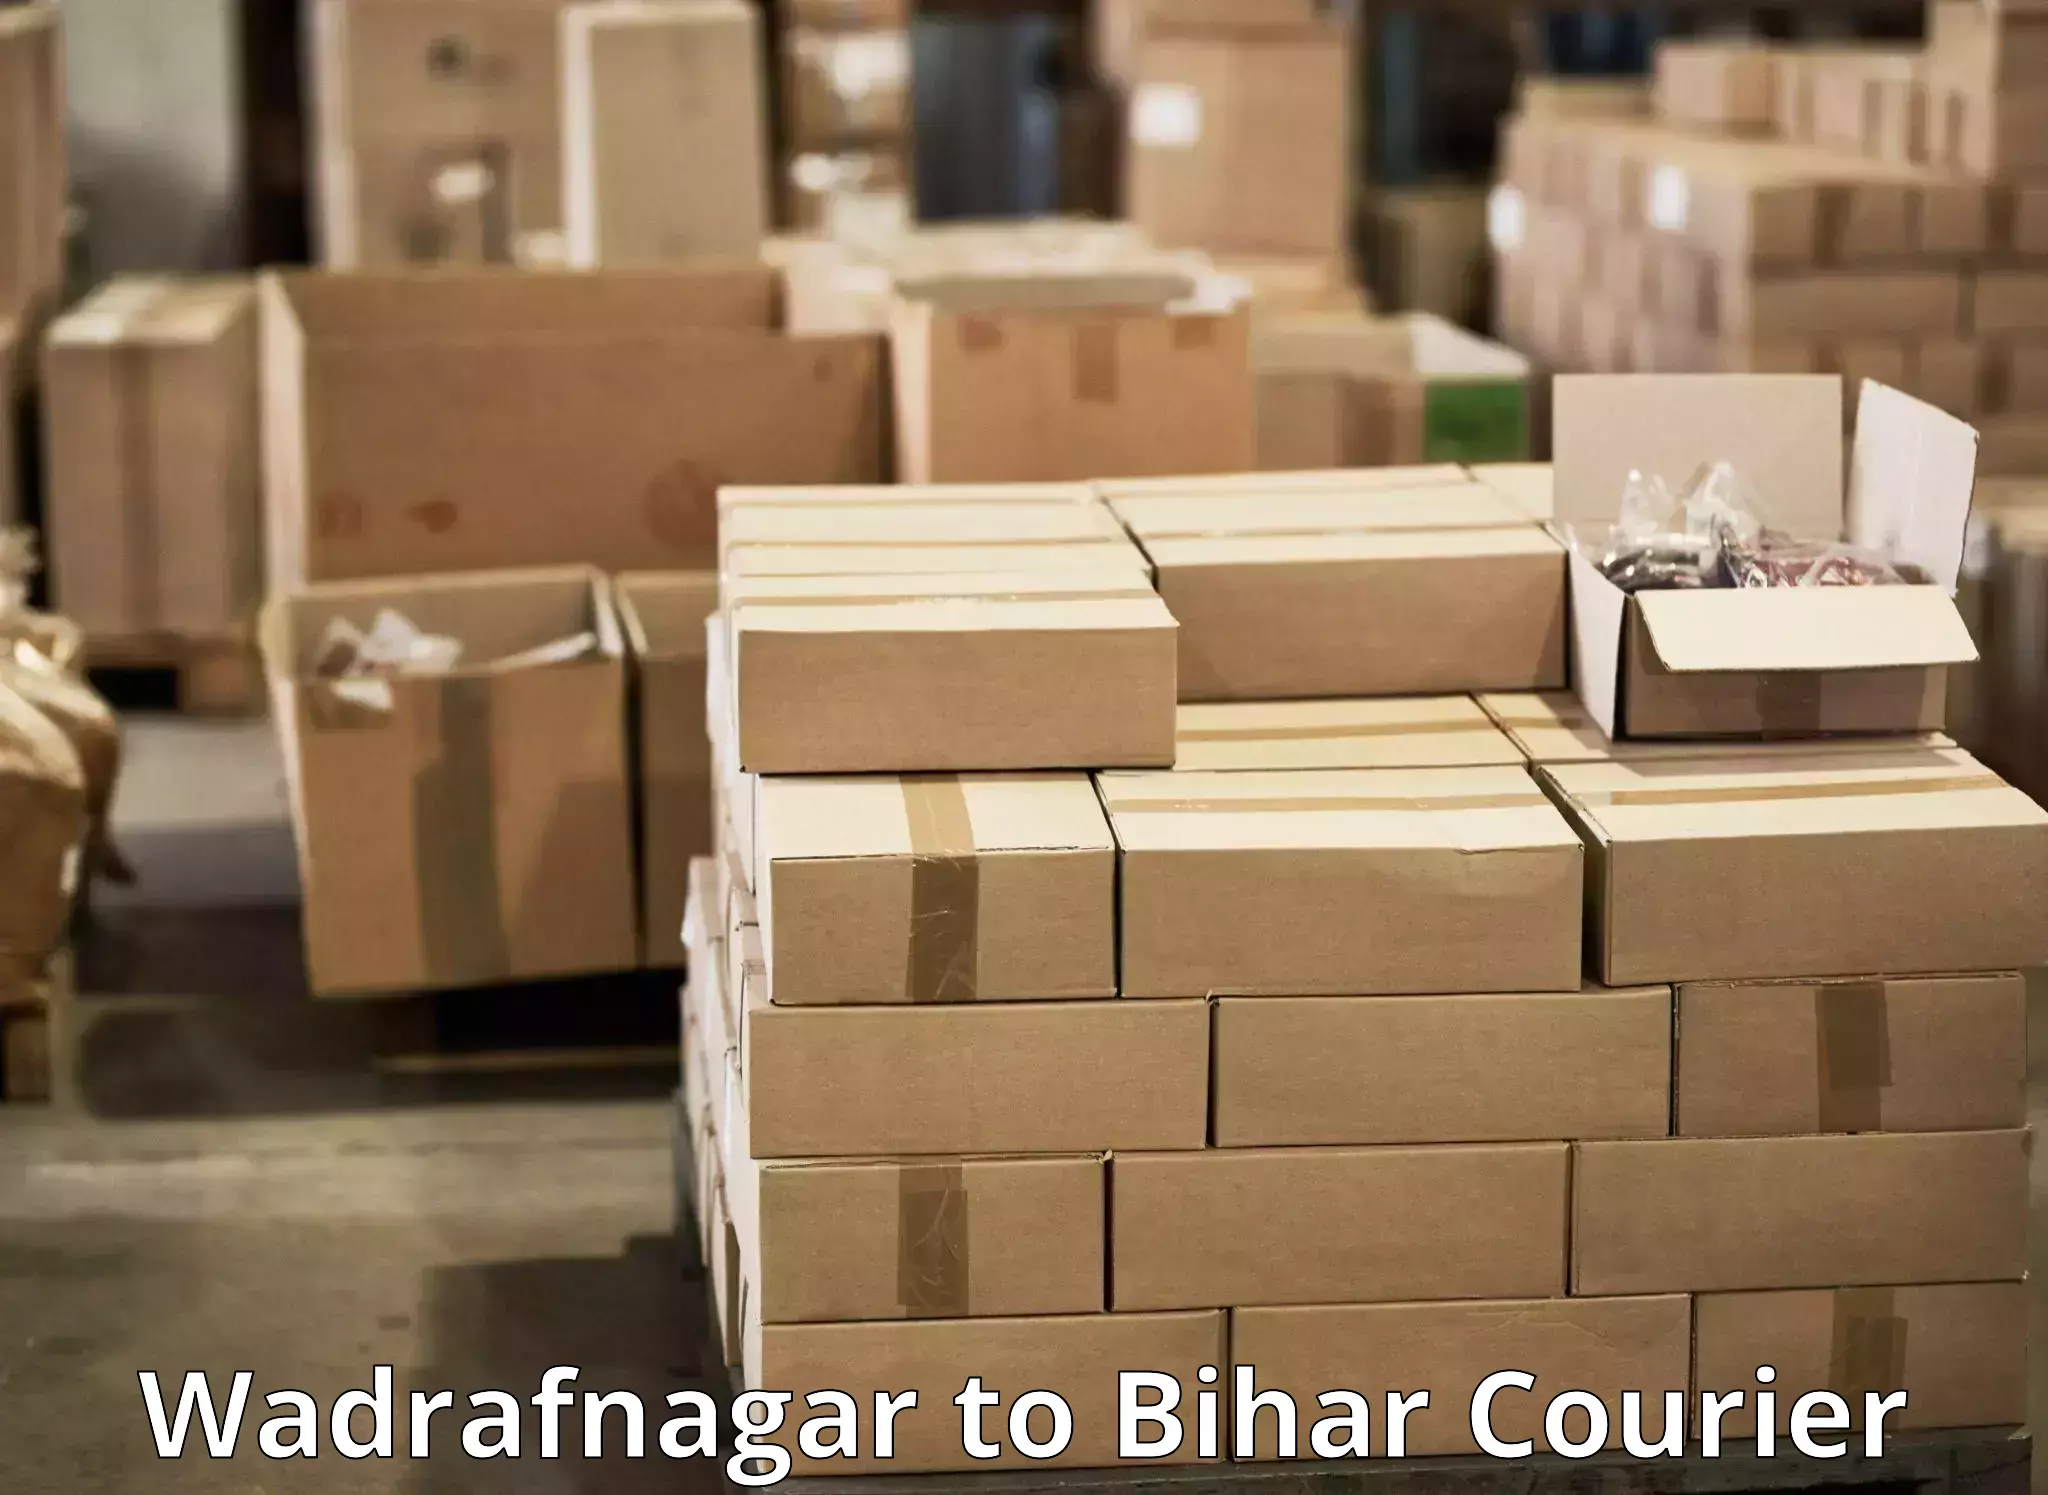 Reliable parcel services Wadrafnagar to Danapur